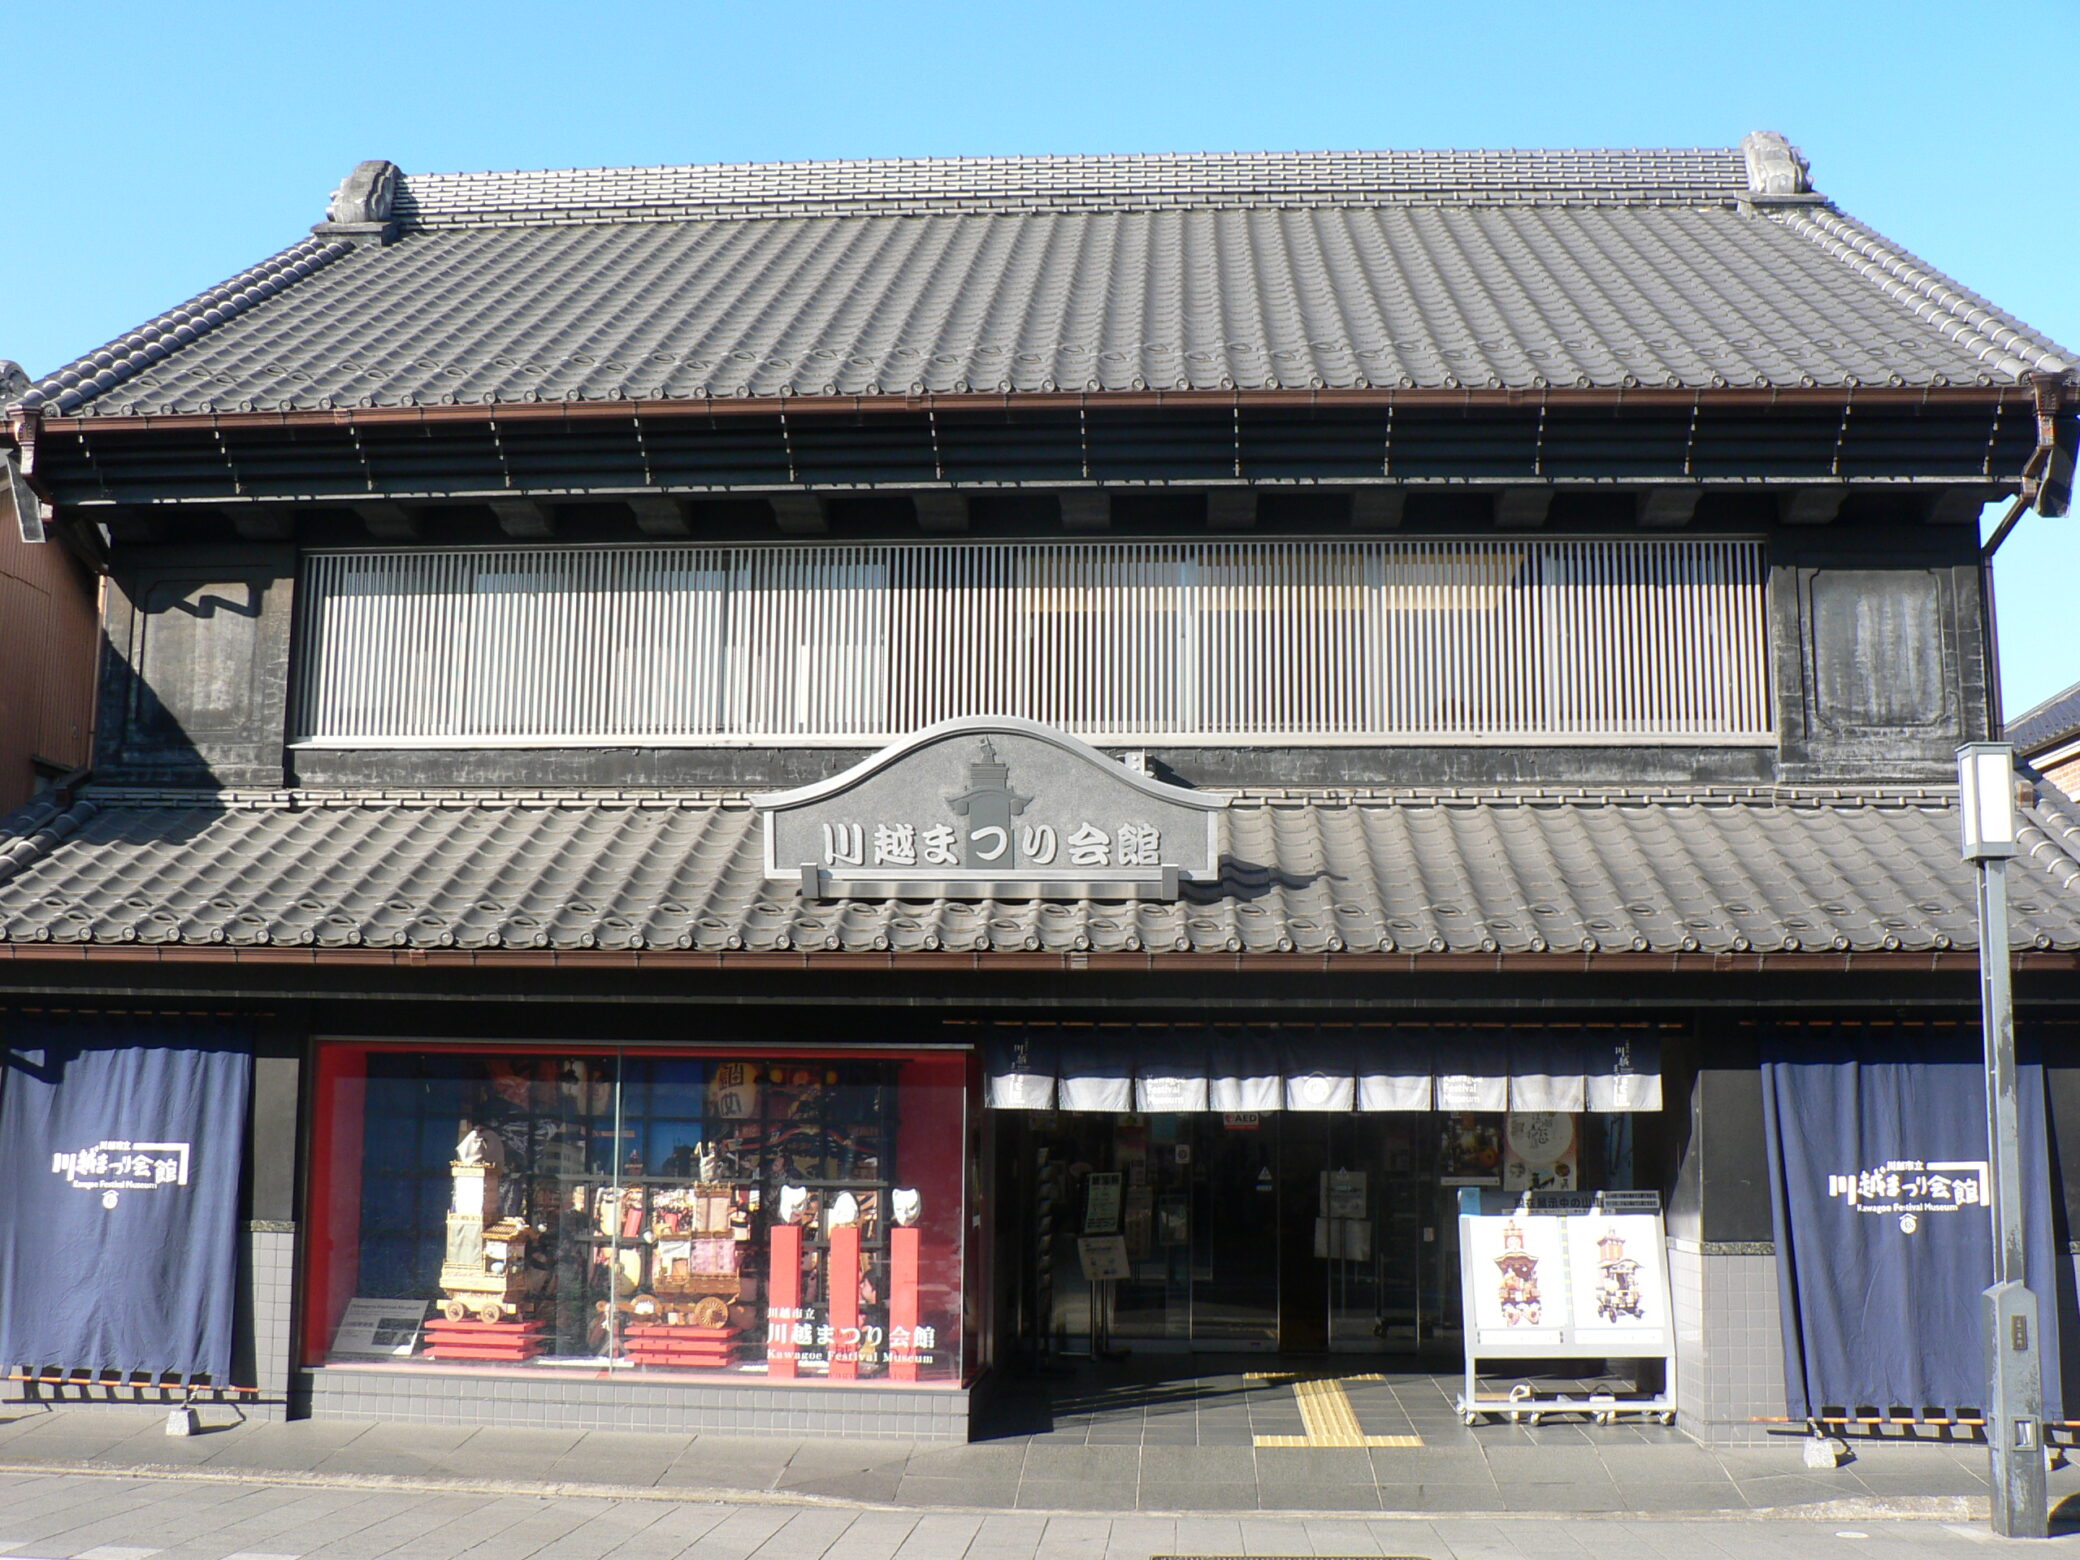 Kawagoe Festival Hall